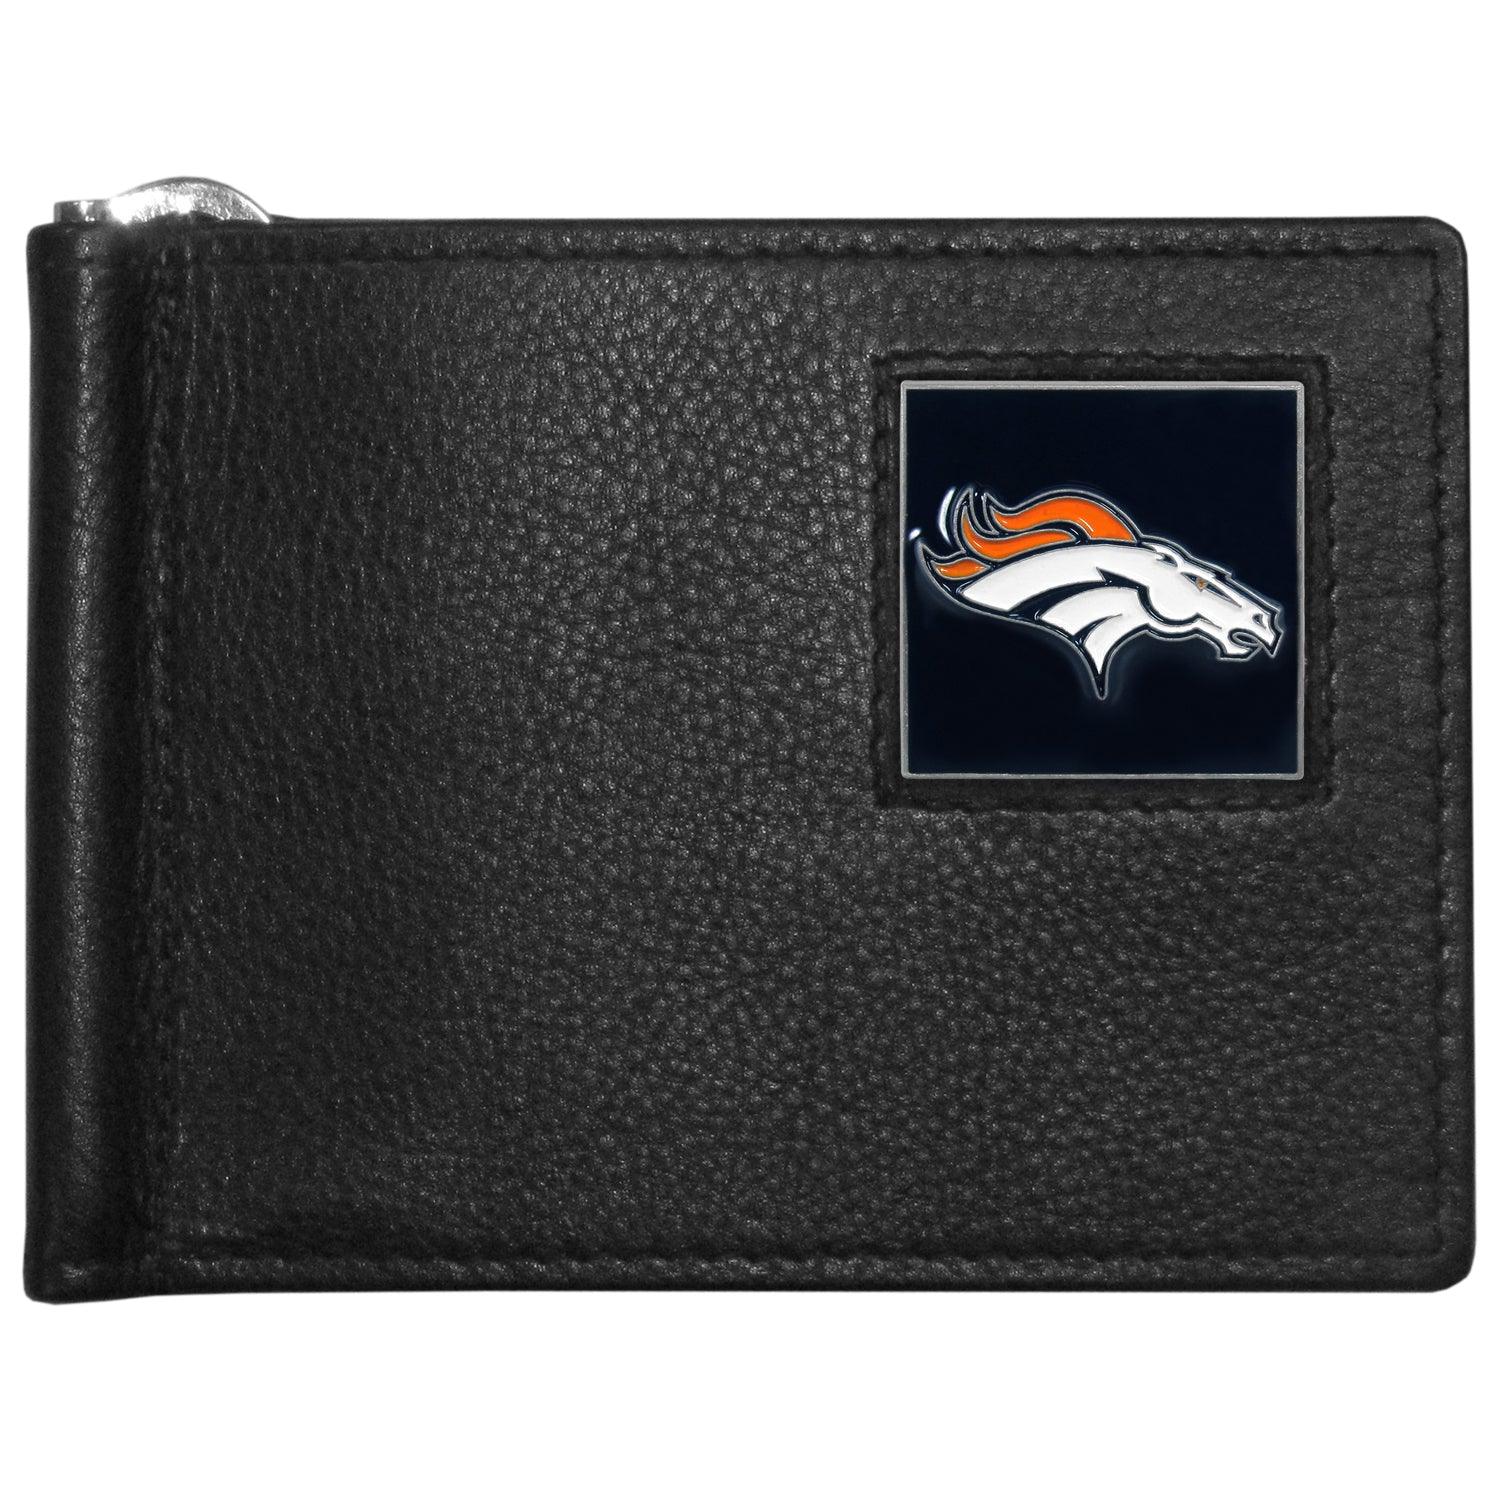 Denver Broncos Leather Bill Clip Wallet - Flyclothing LLC